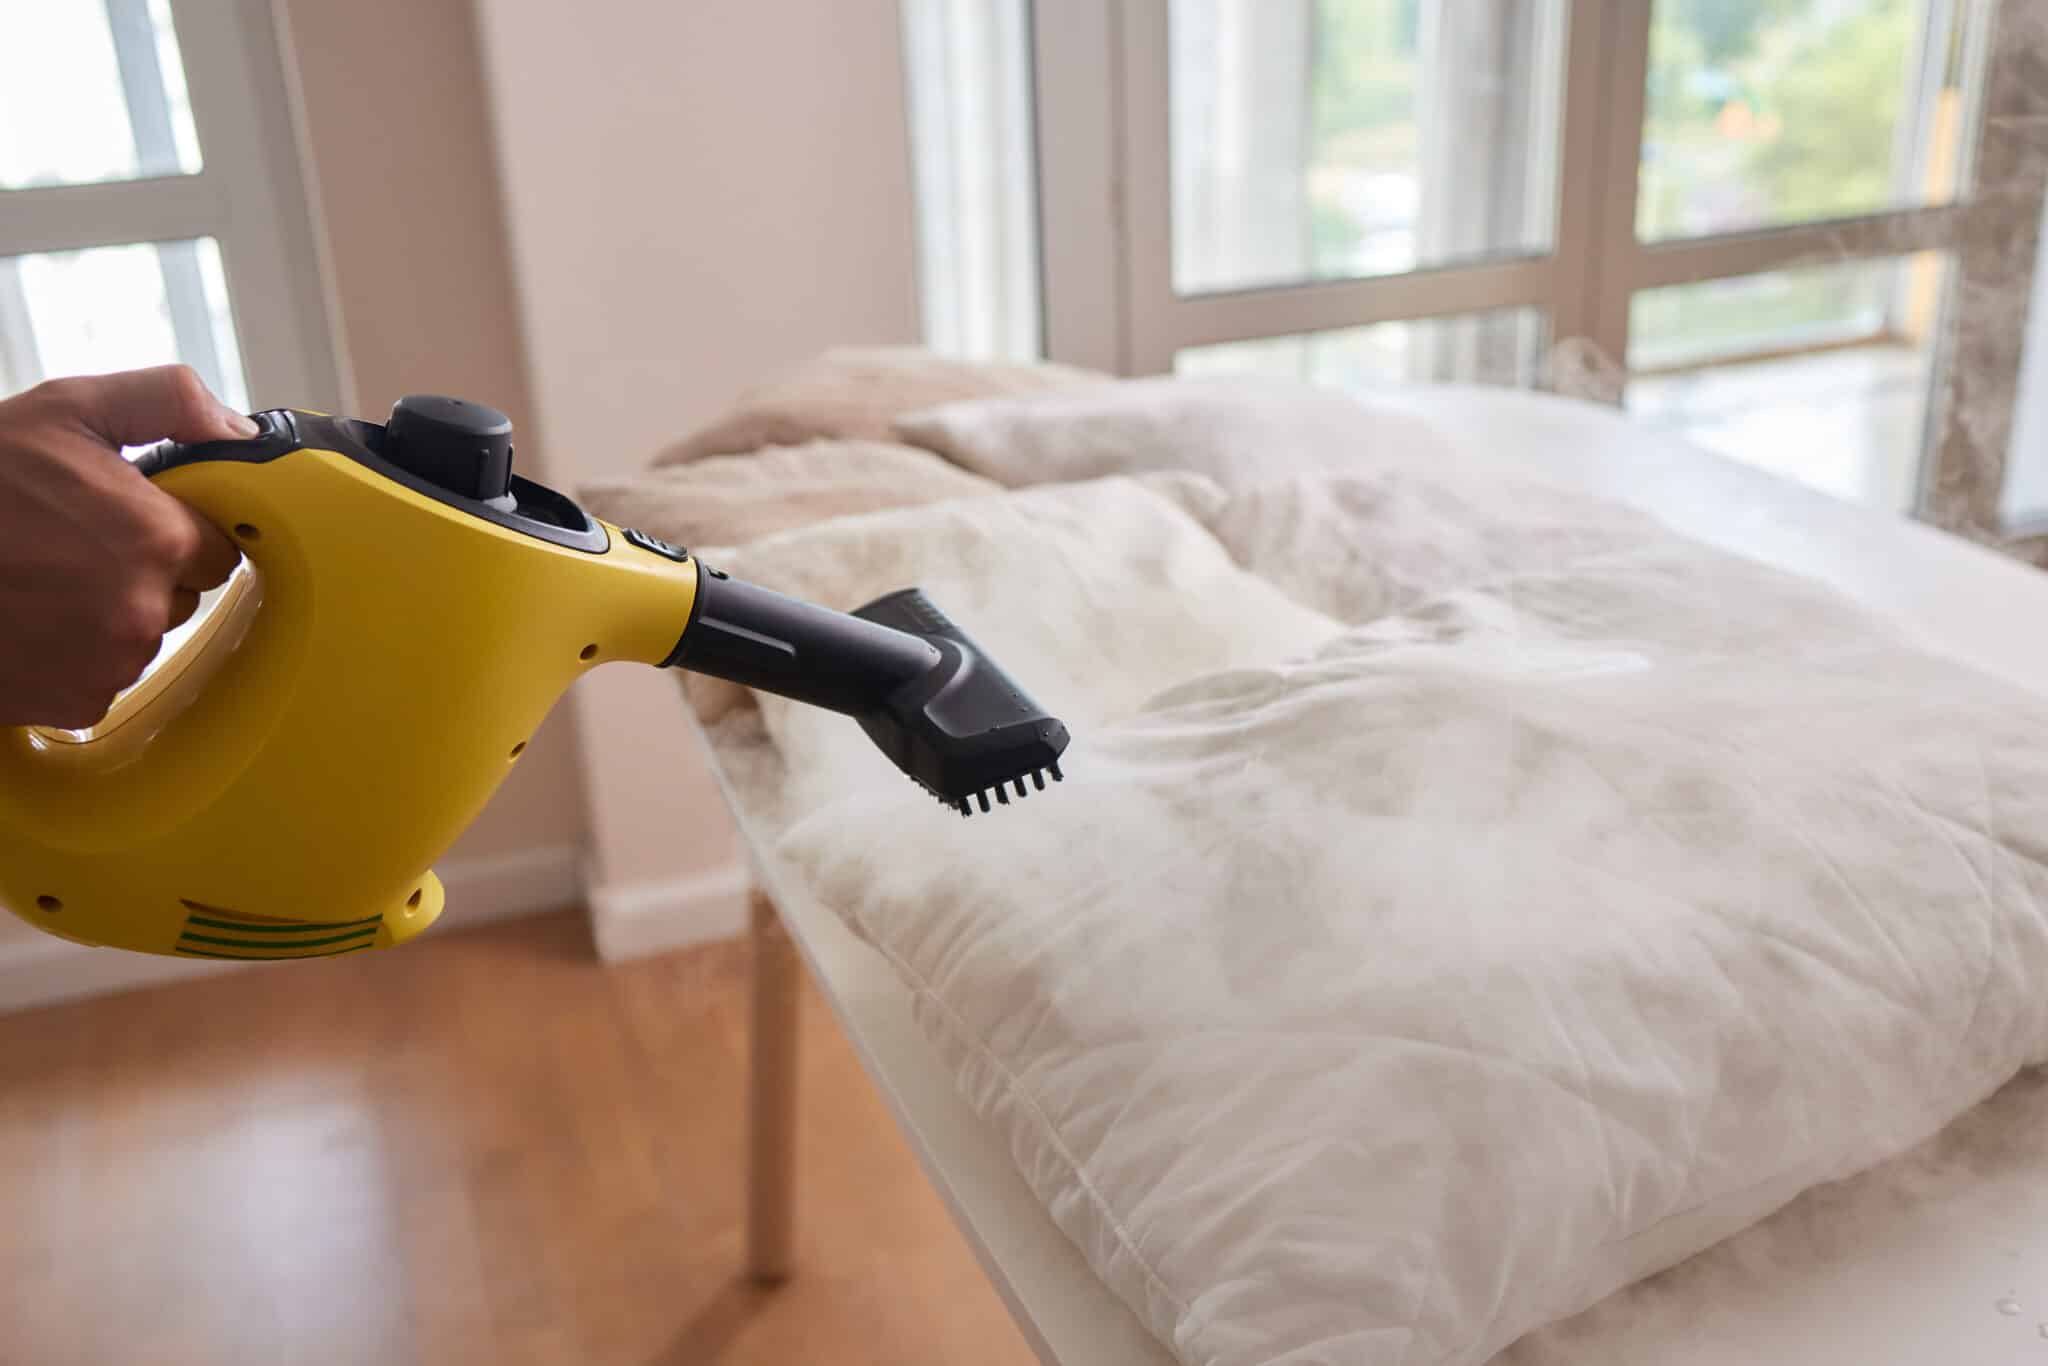 Nettoyage d'une couette avec un nettoyeur vapeur portatif jaune dans une chambre lumineuse.